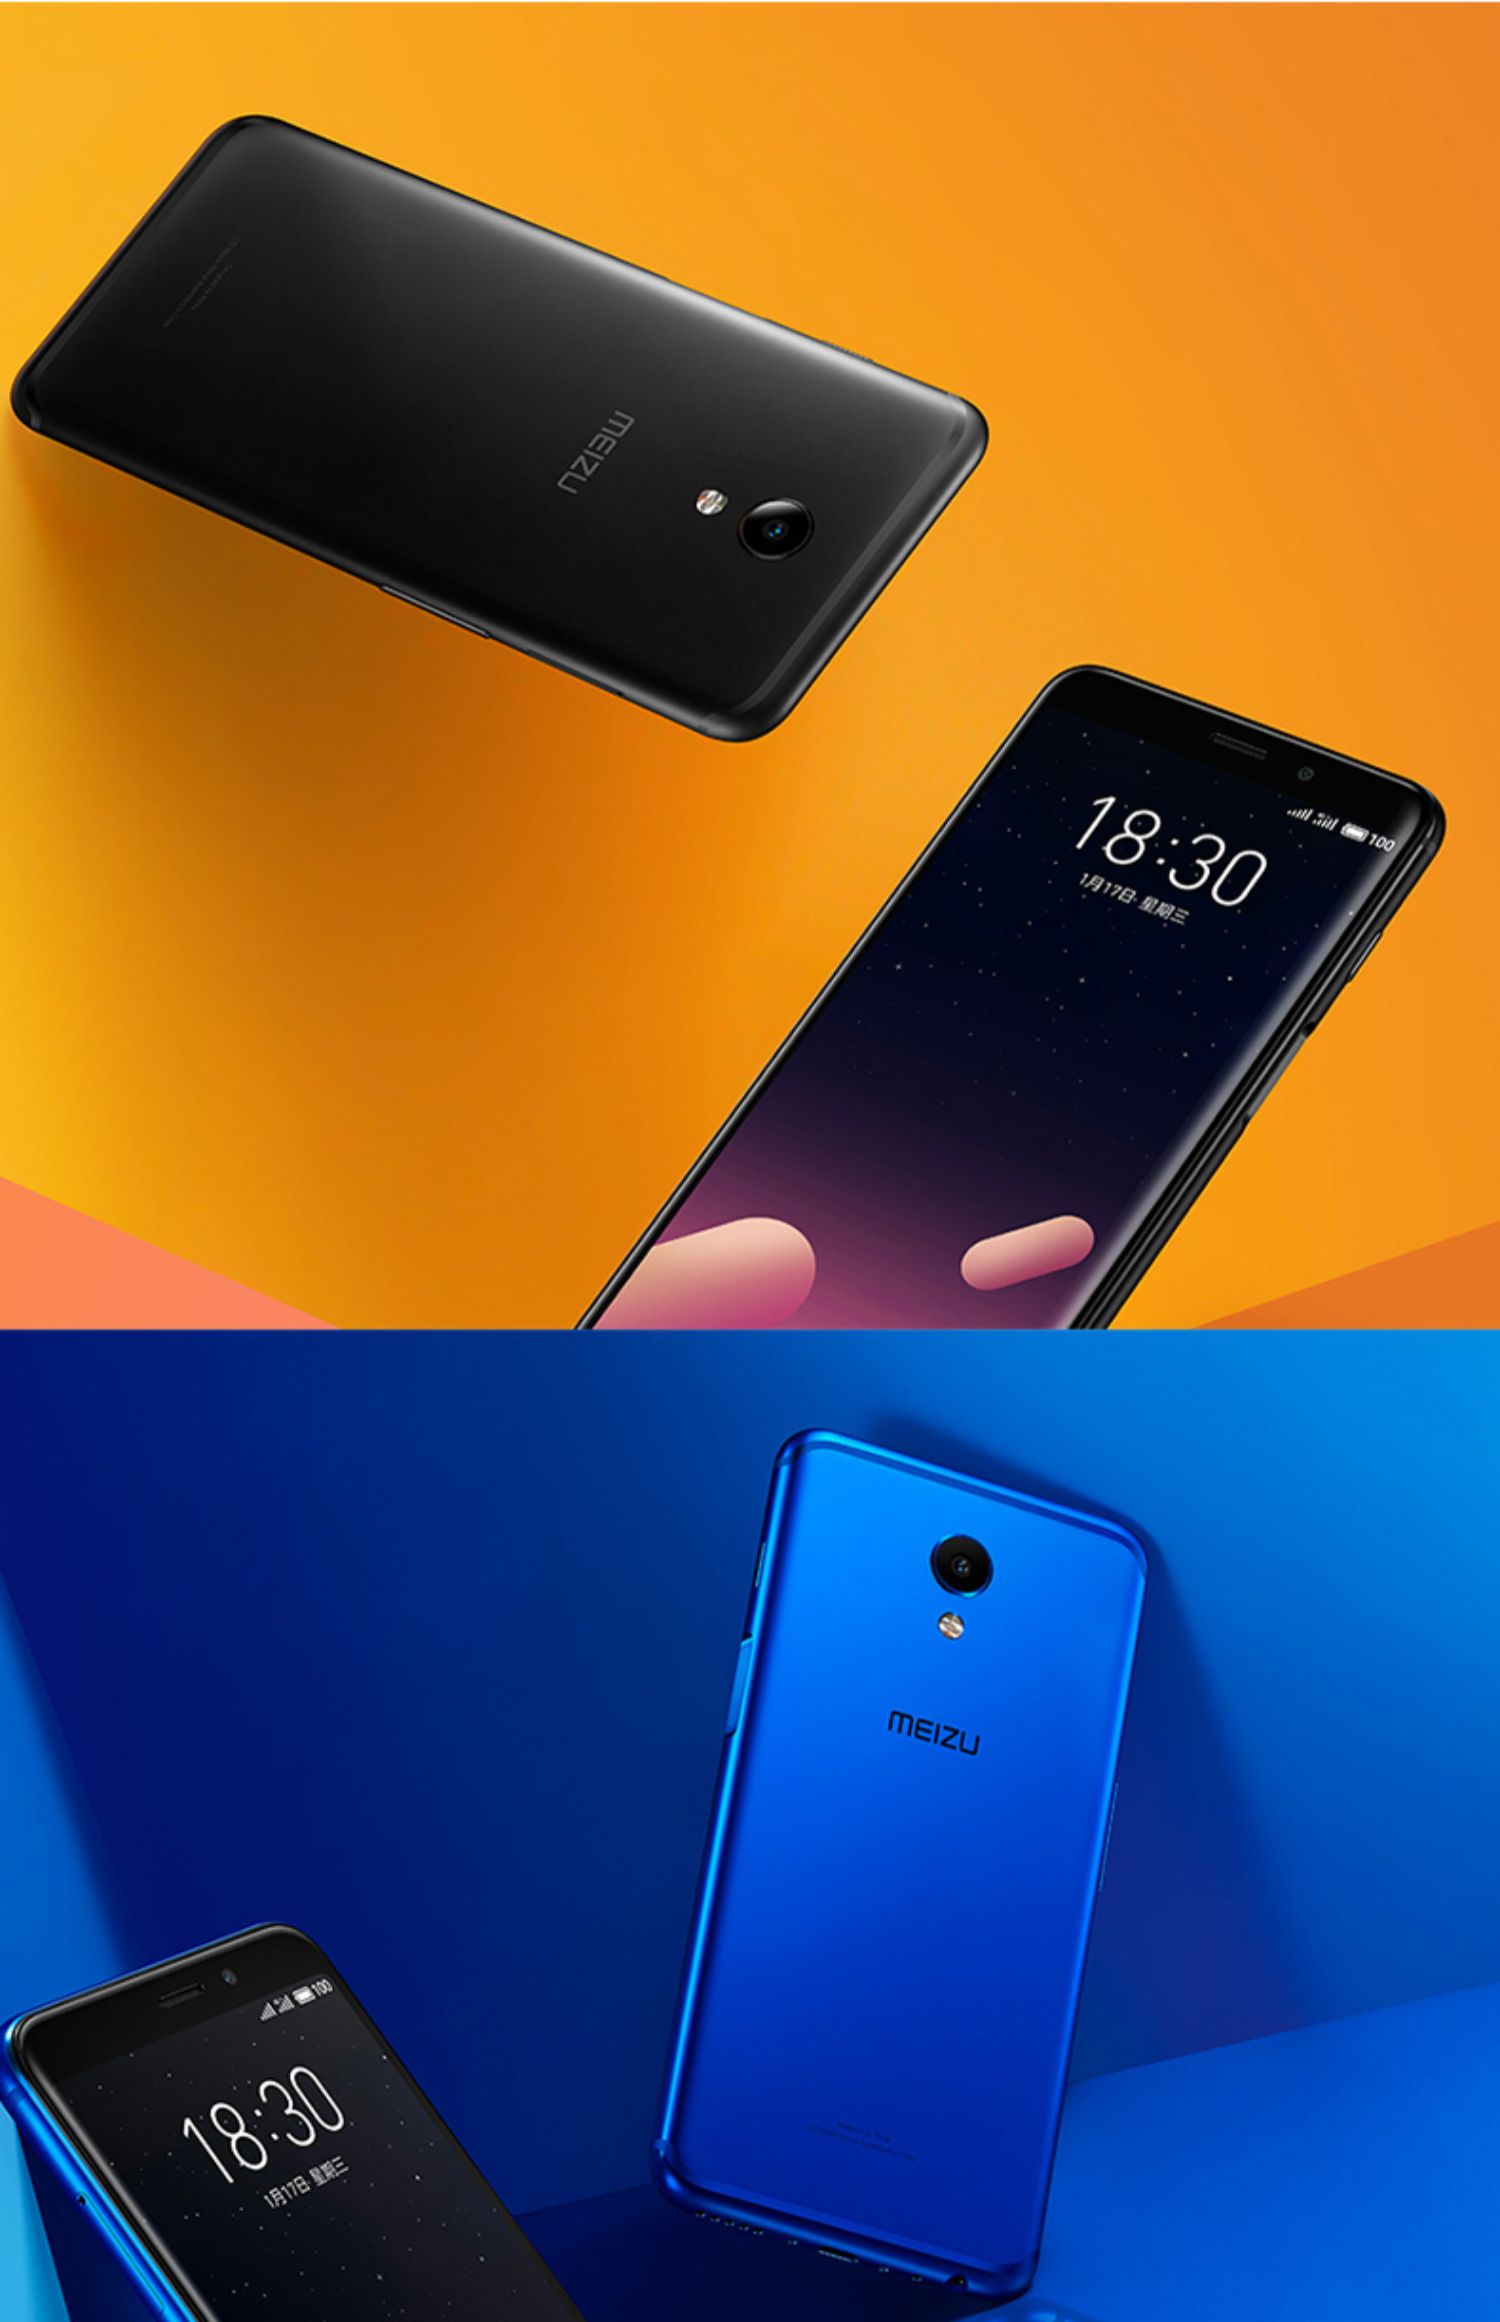 SF Express Meizu / Meizu Charm Blue S6 toàn màn hình đầy đủ Điện thoại thông minh Netcom 4G chính thức lưu trữ trang web chính thức lưu ý chính hãng8 6t 16THPLUS